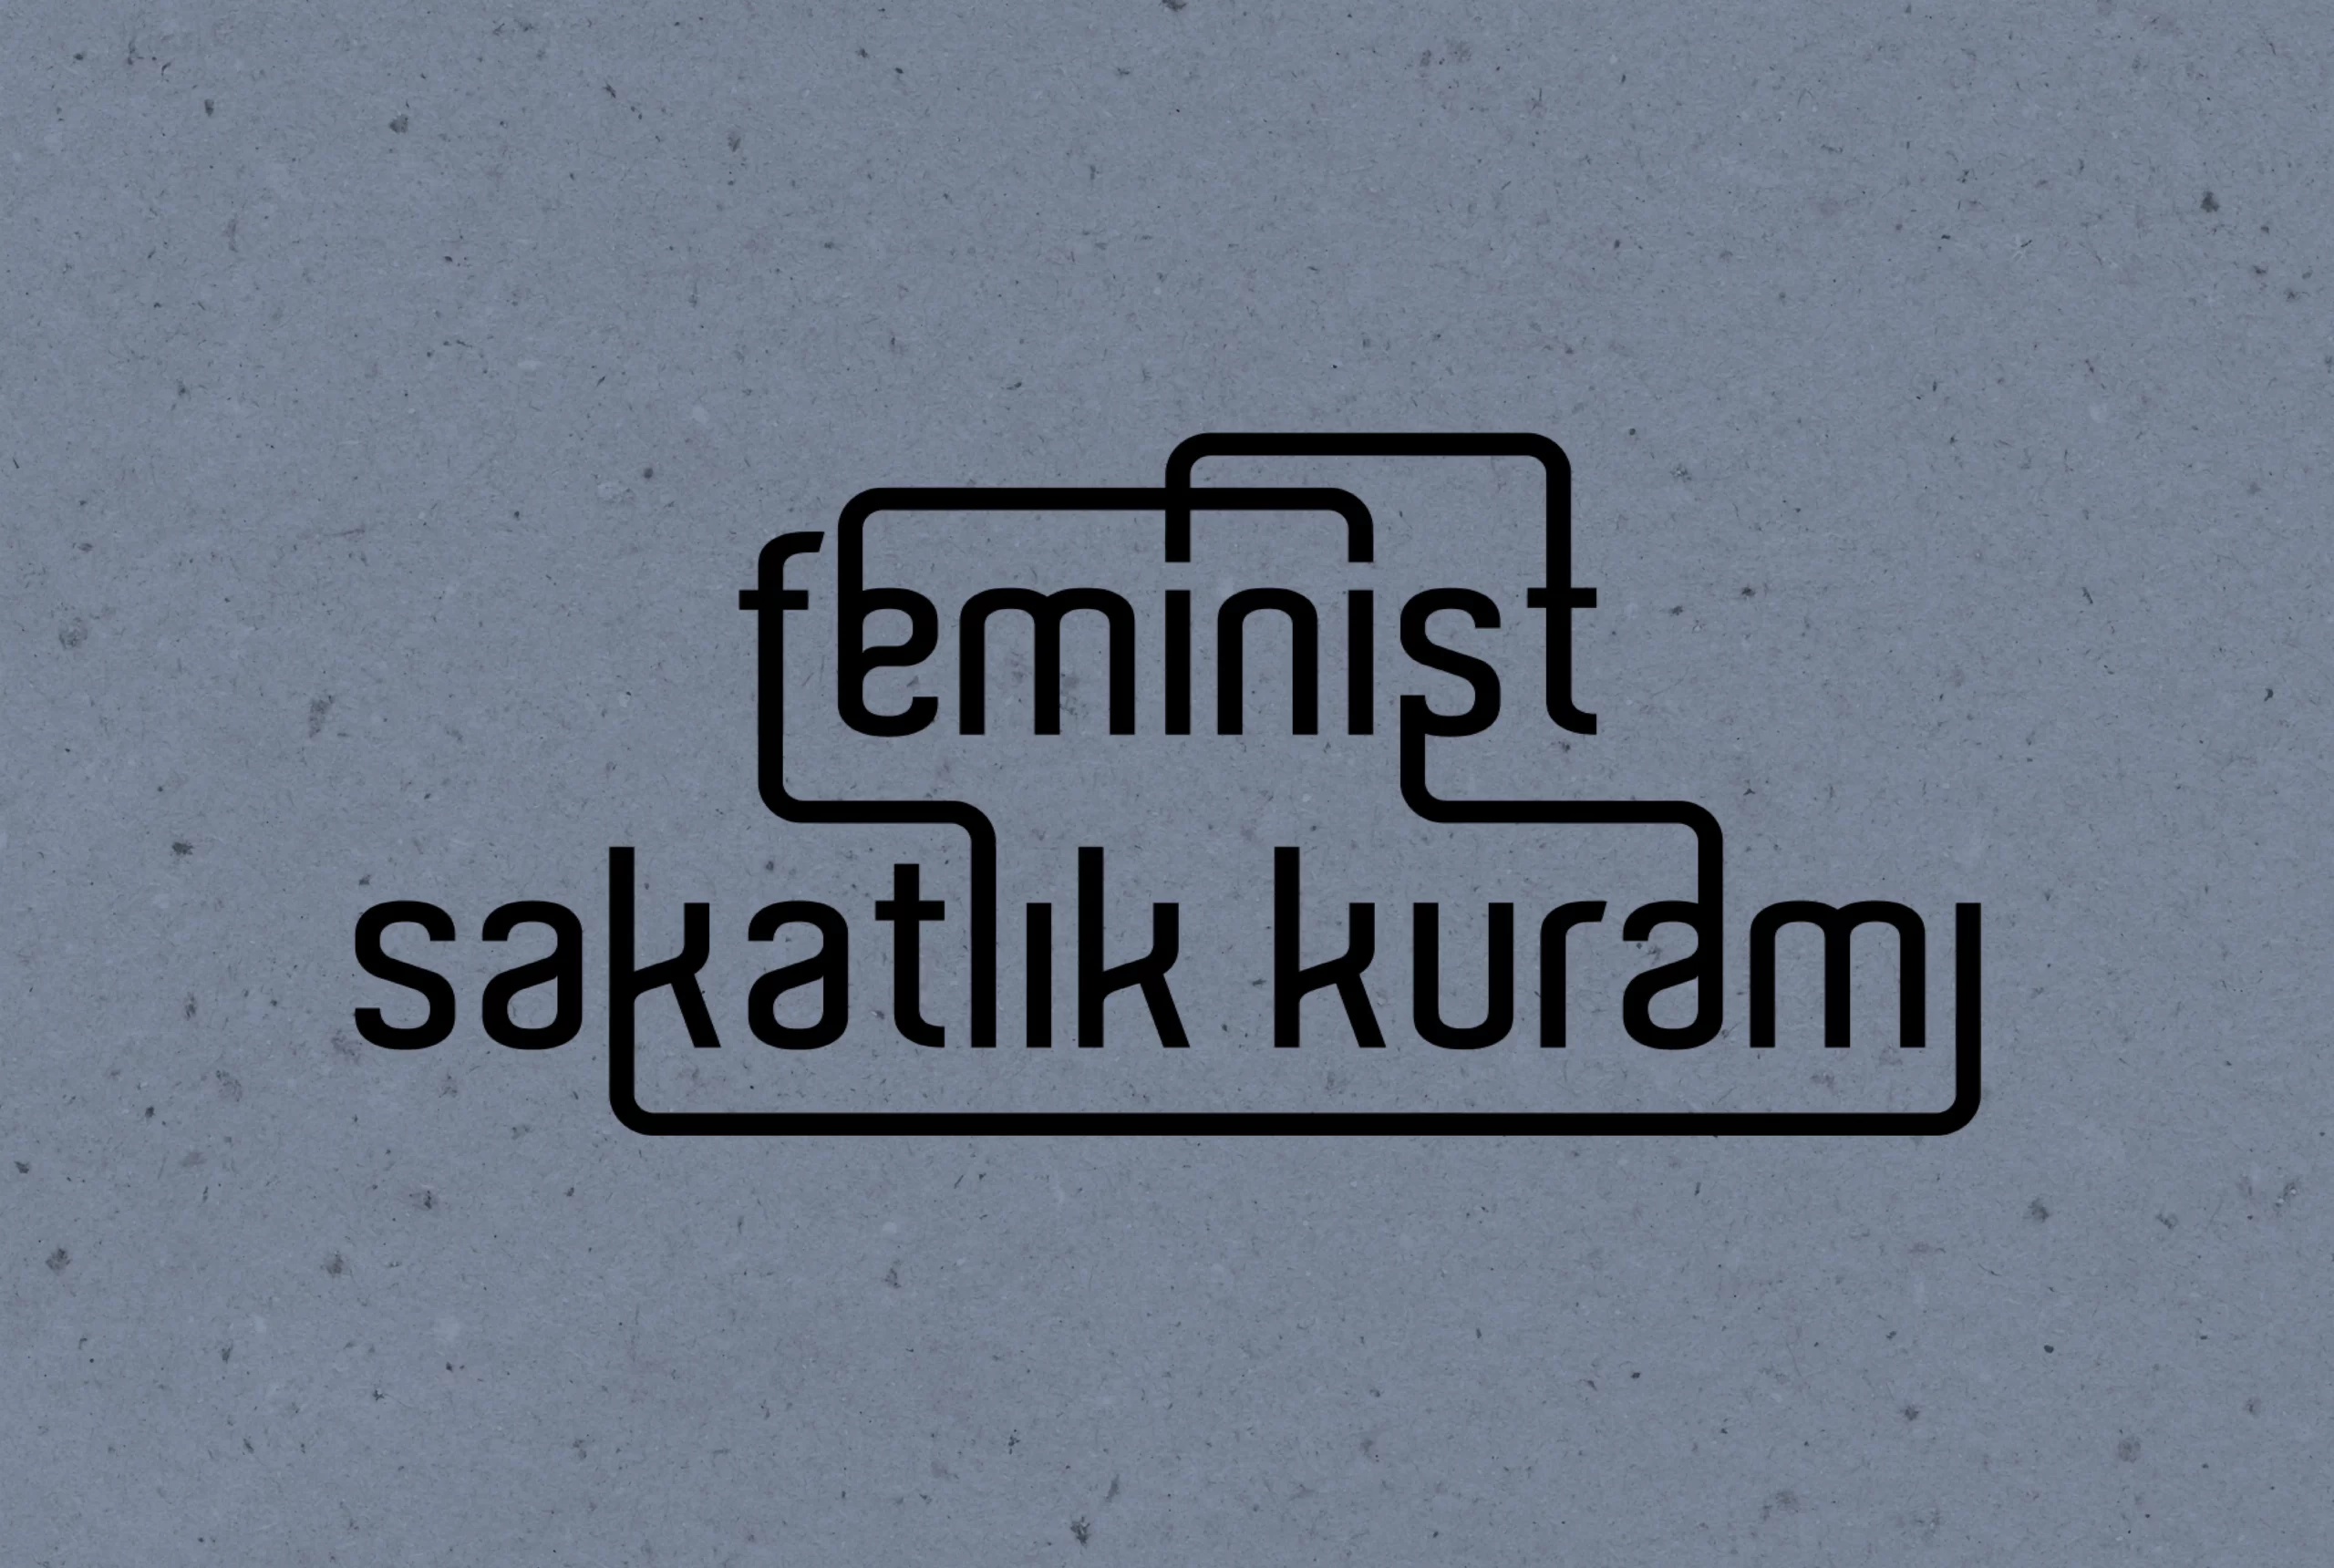 Feminist Sakatlık Kuramı